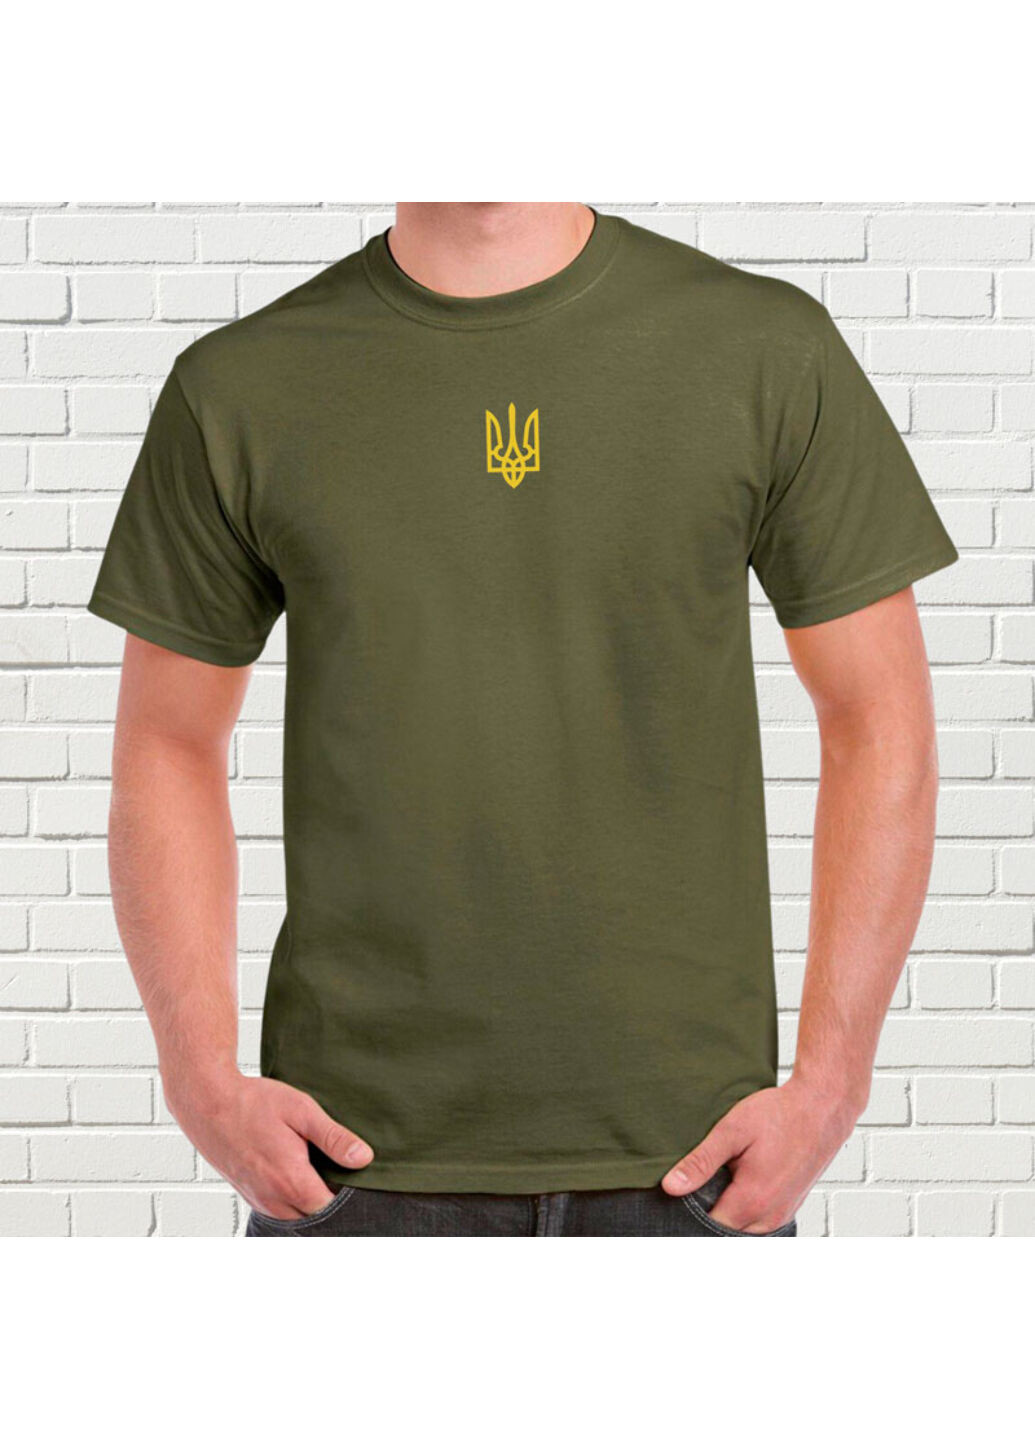 Хакі (оливкова) футболка з вишивкою золотого тризуба чоловіча millytary green s No Brand